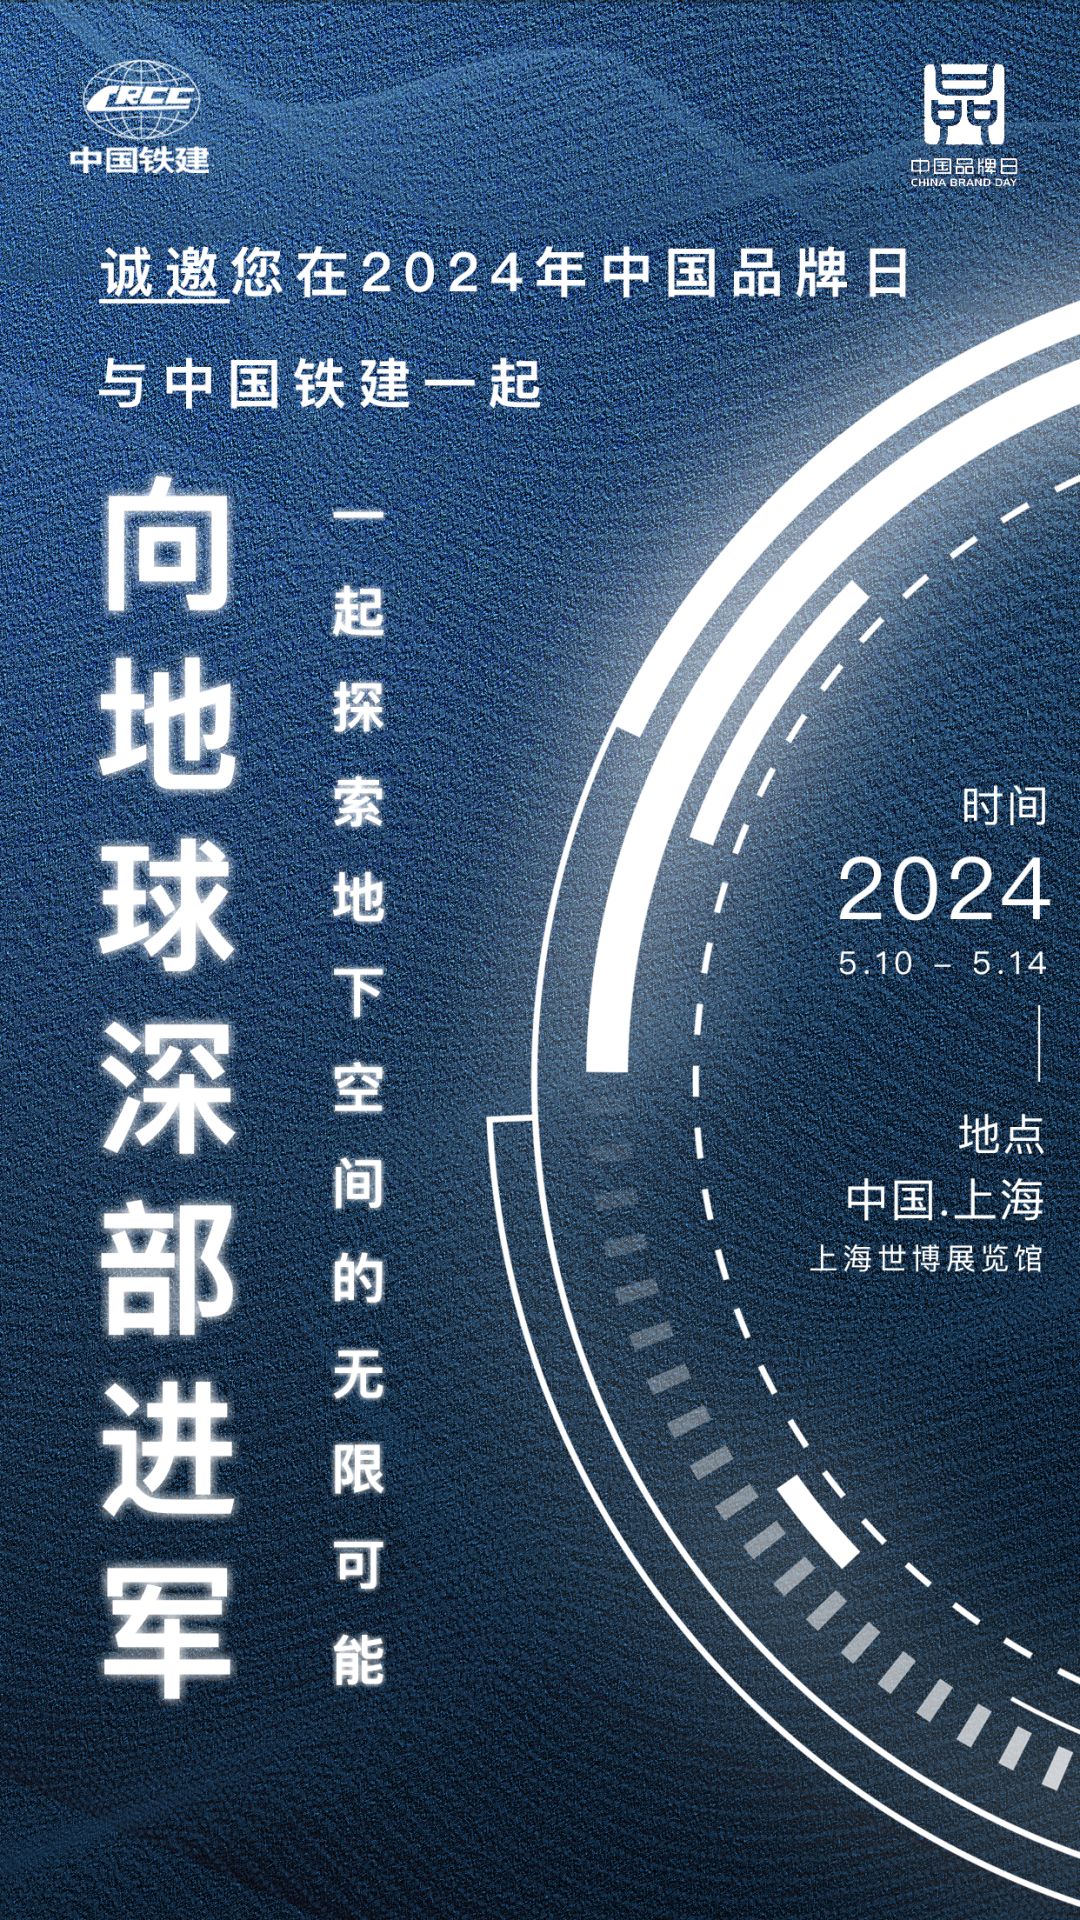 中国铁建邀请您参加2024年中国品牌日